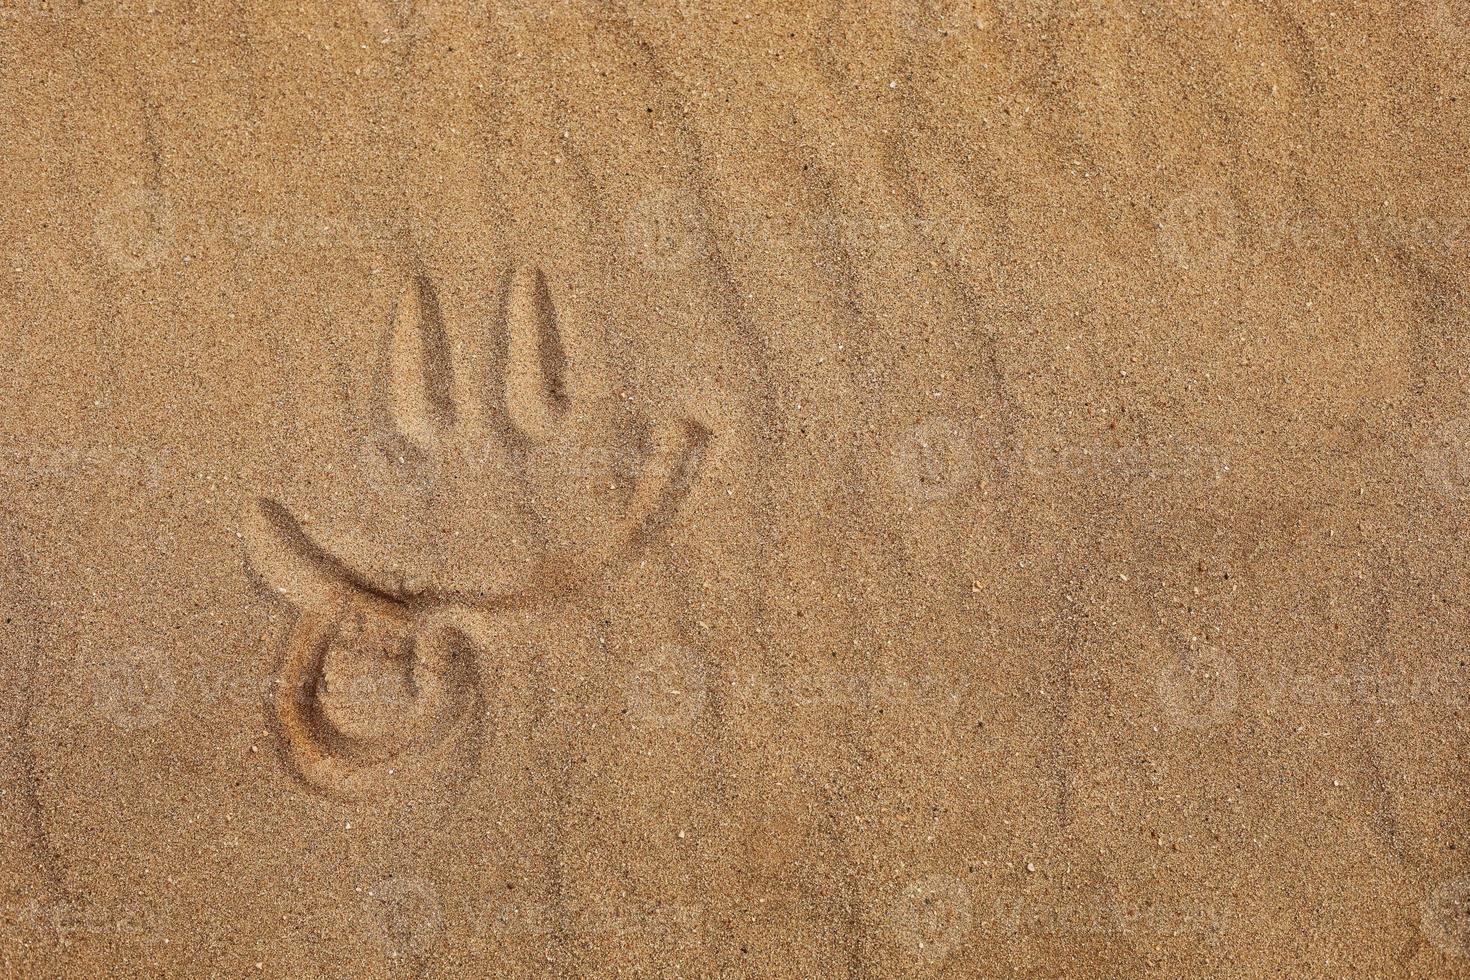 Cara sonriente con la lengua fuera hecha con el dedo en una playa de arena foto